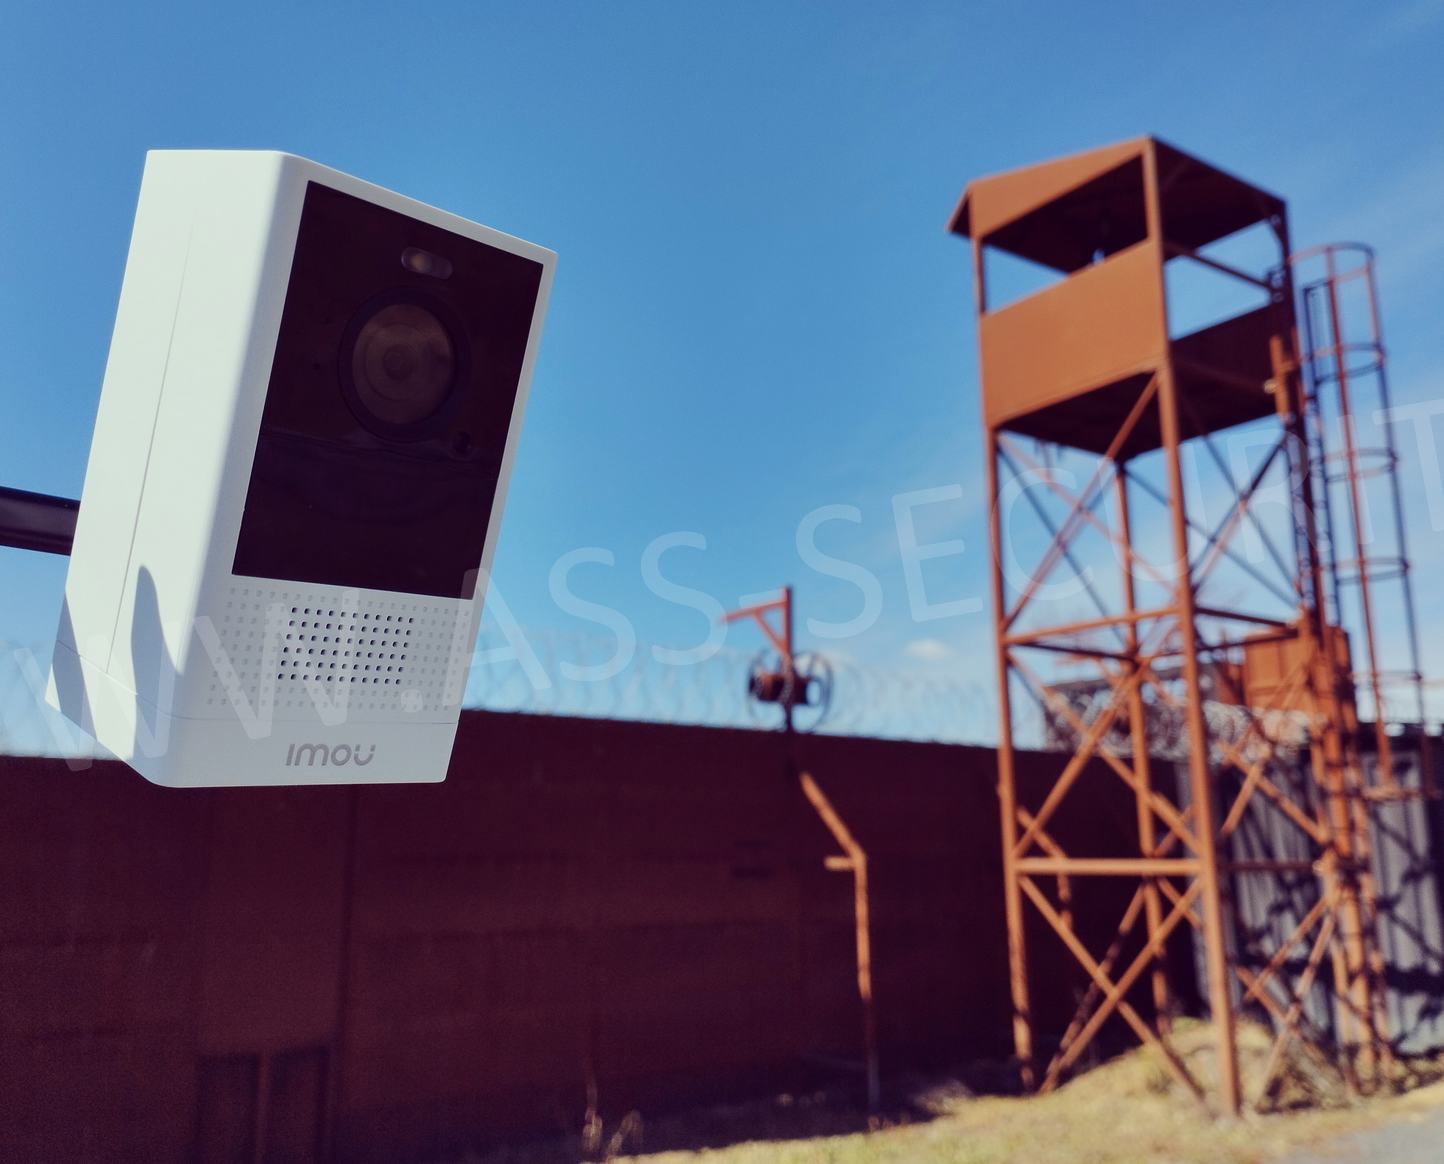 Test Imou Versa : une petite caméra de surveillance surprenante d